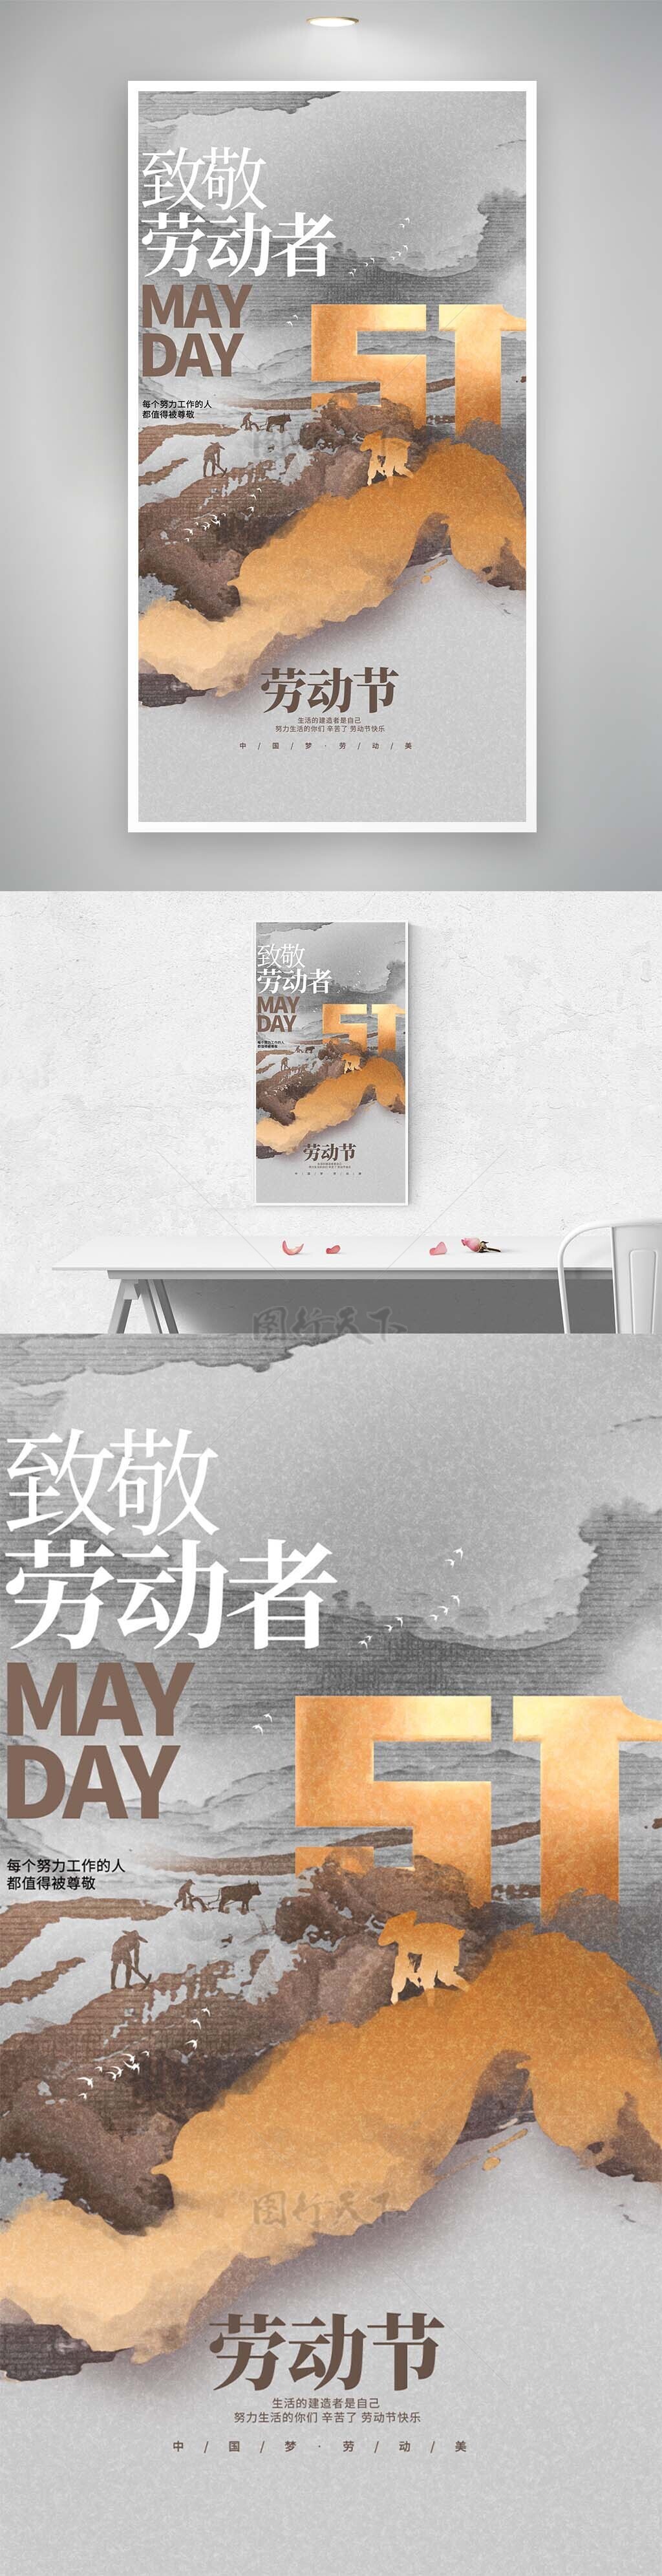 中国梦劳动美五一大气泼墨质感海报